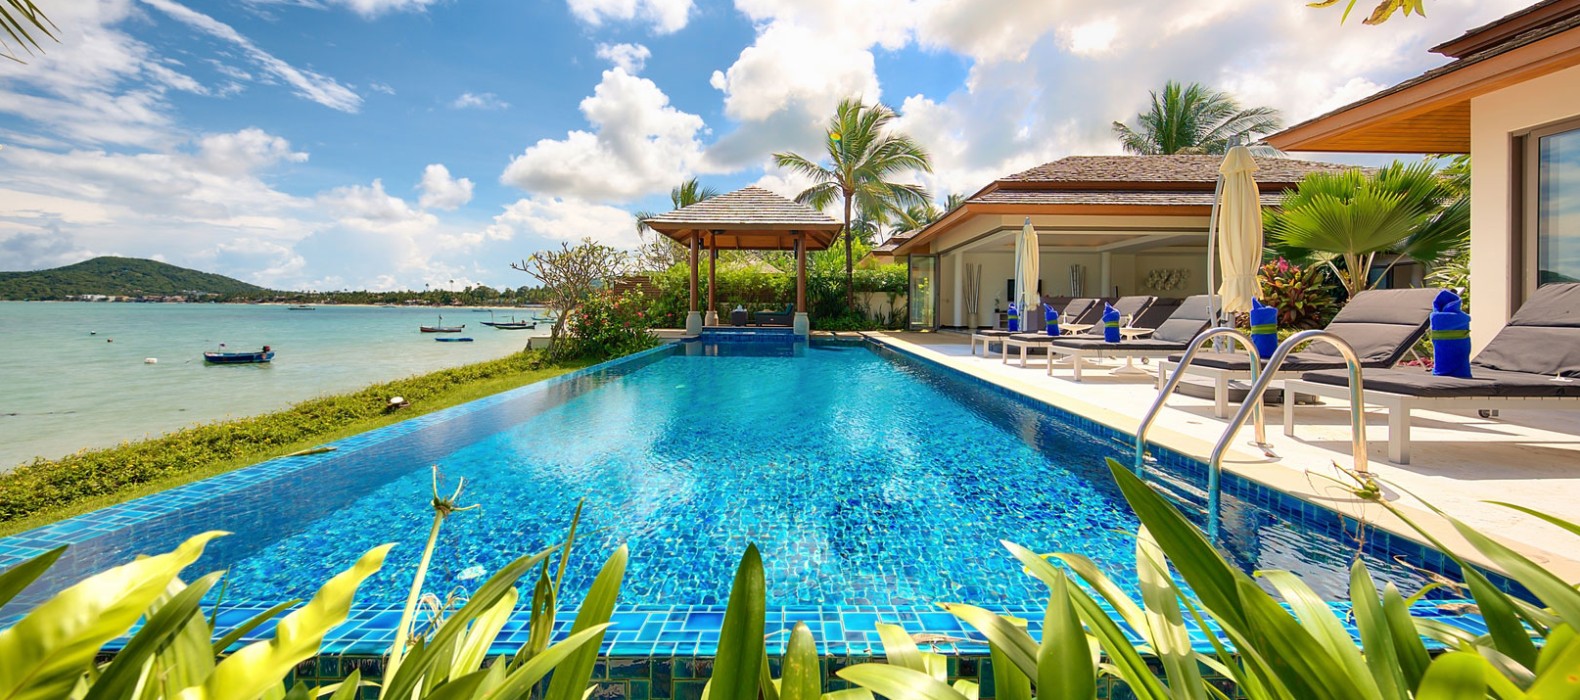 Exterior pool of Villa Beautiful Life in Koh Samui